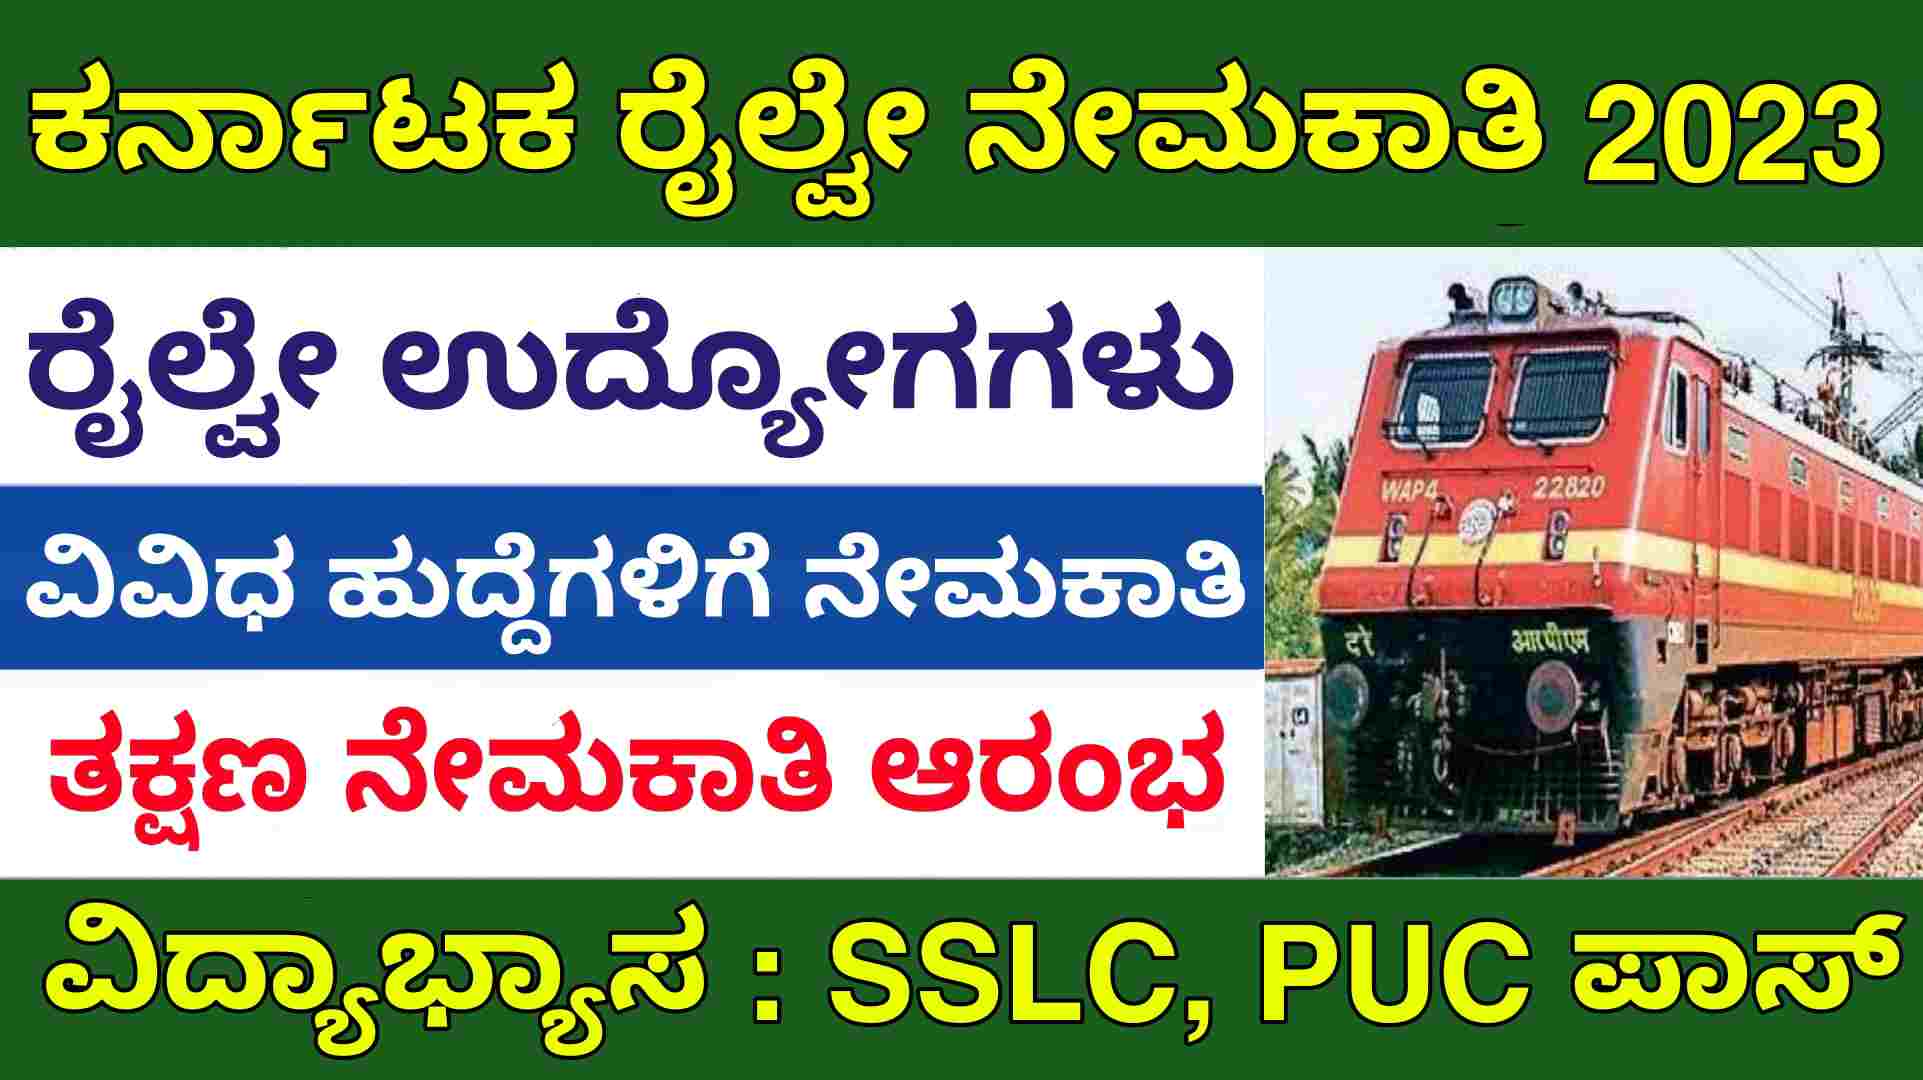 Karnataka railway recruitment